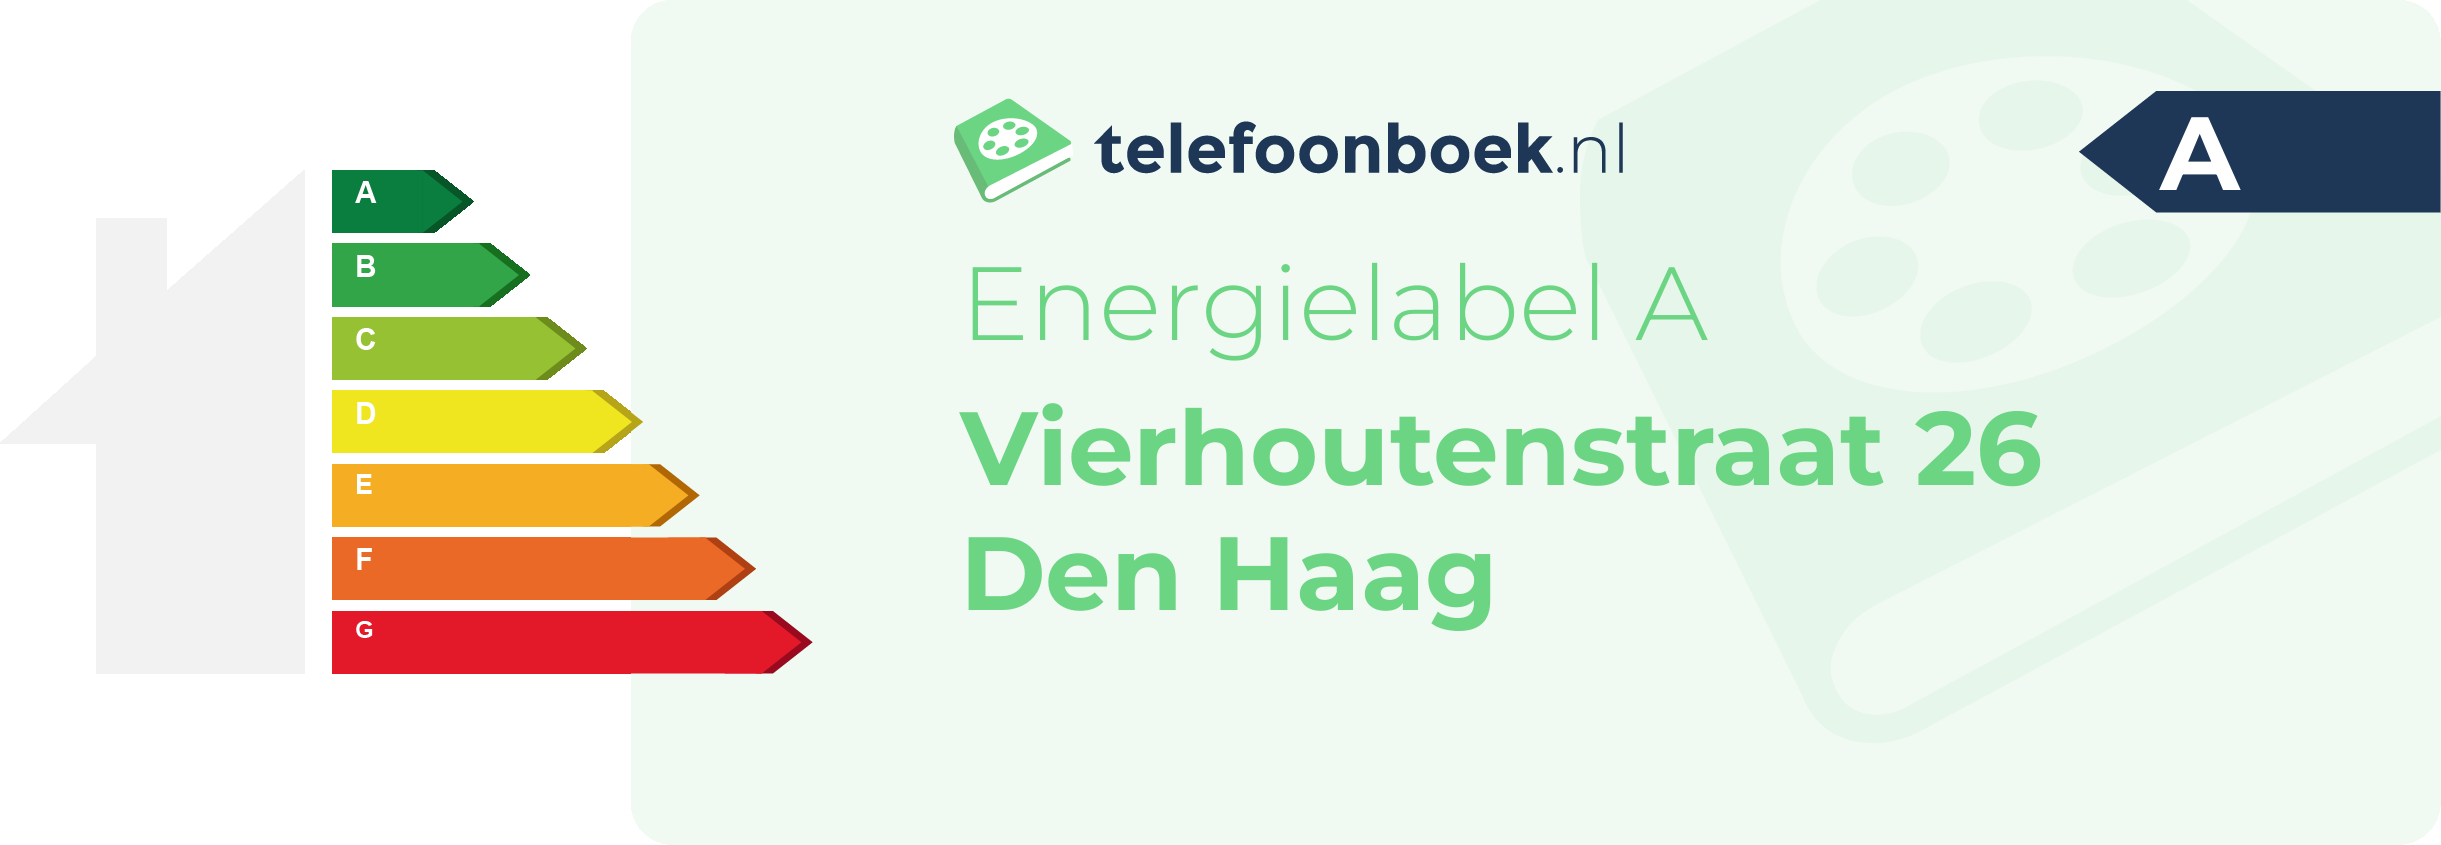 Energielabel Vierhoutenstraat 26 Den Haag